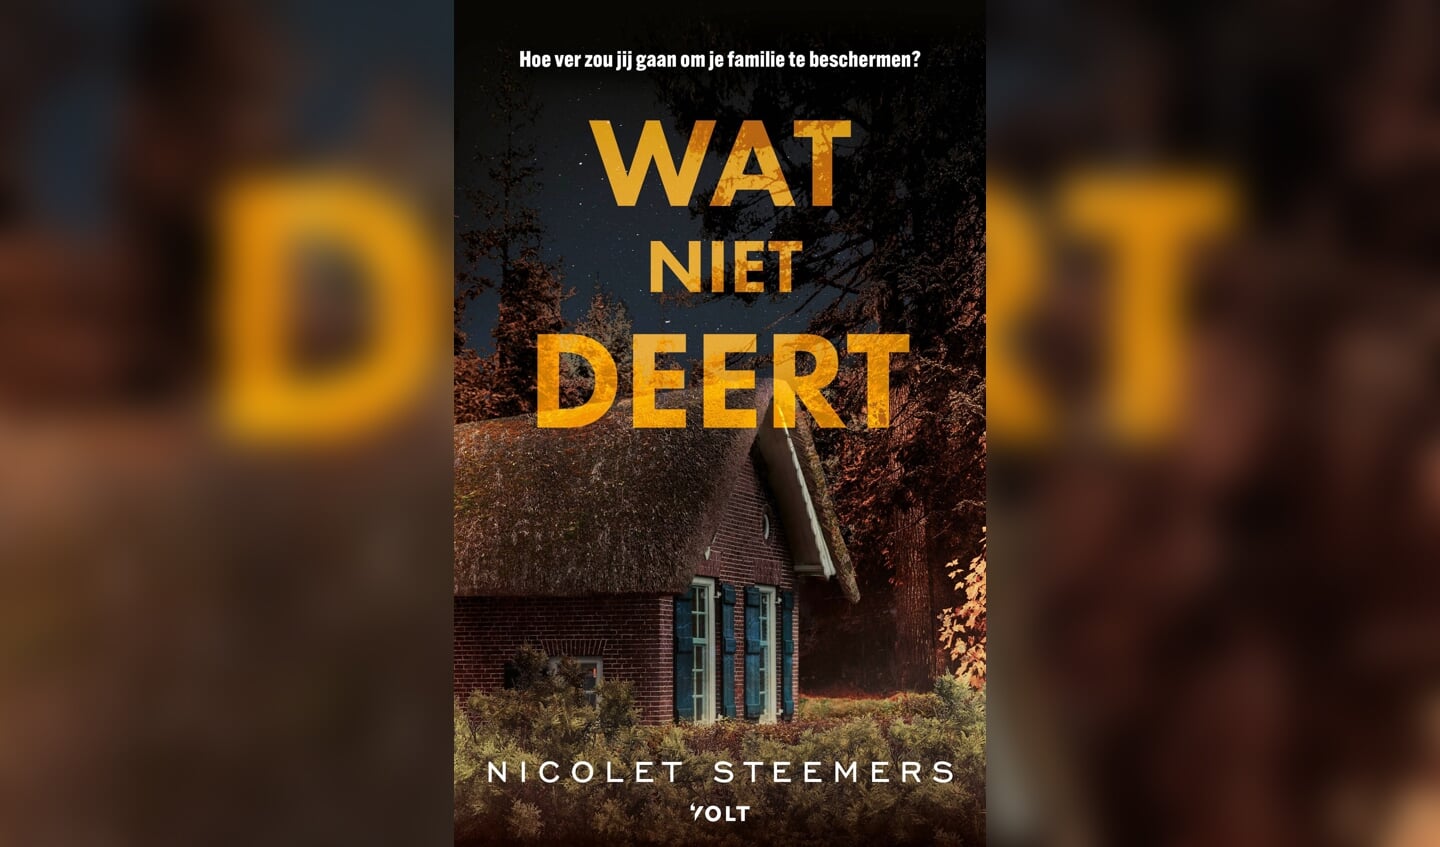 De nieuwe roman van Nicolet Steemers ligt in de winkel.